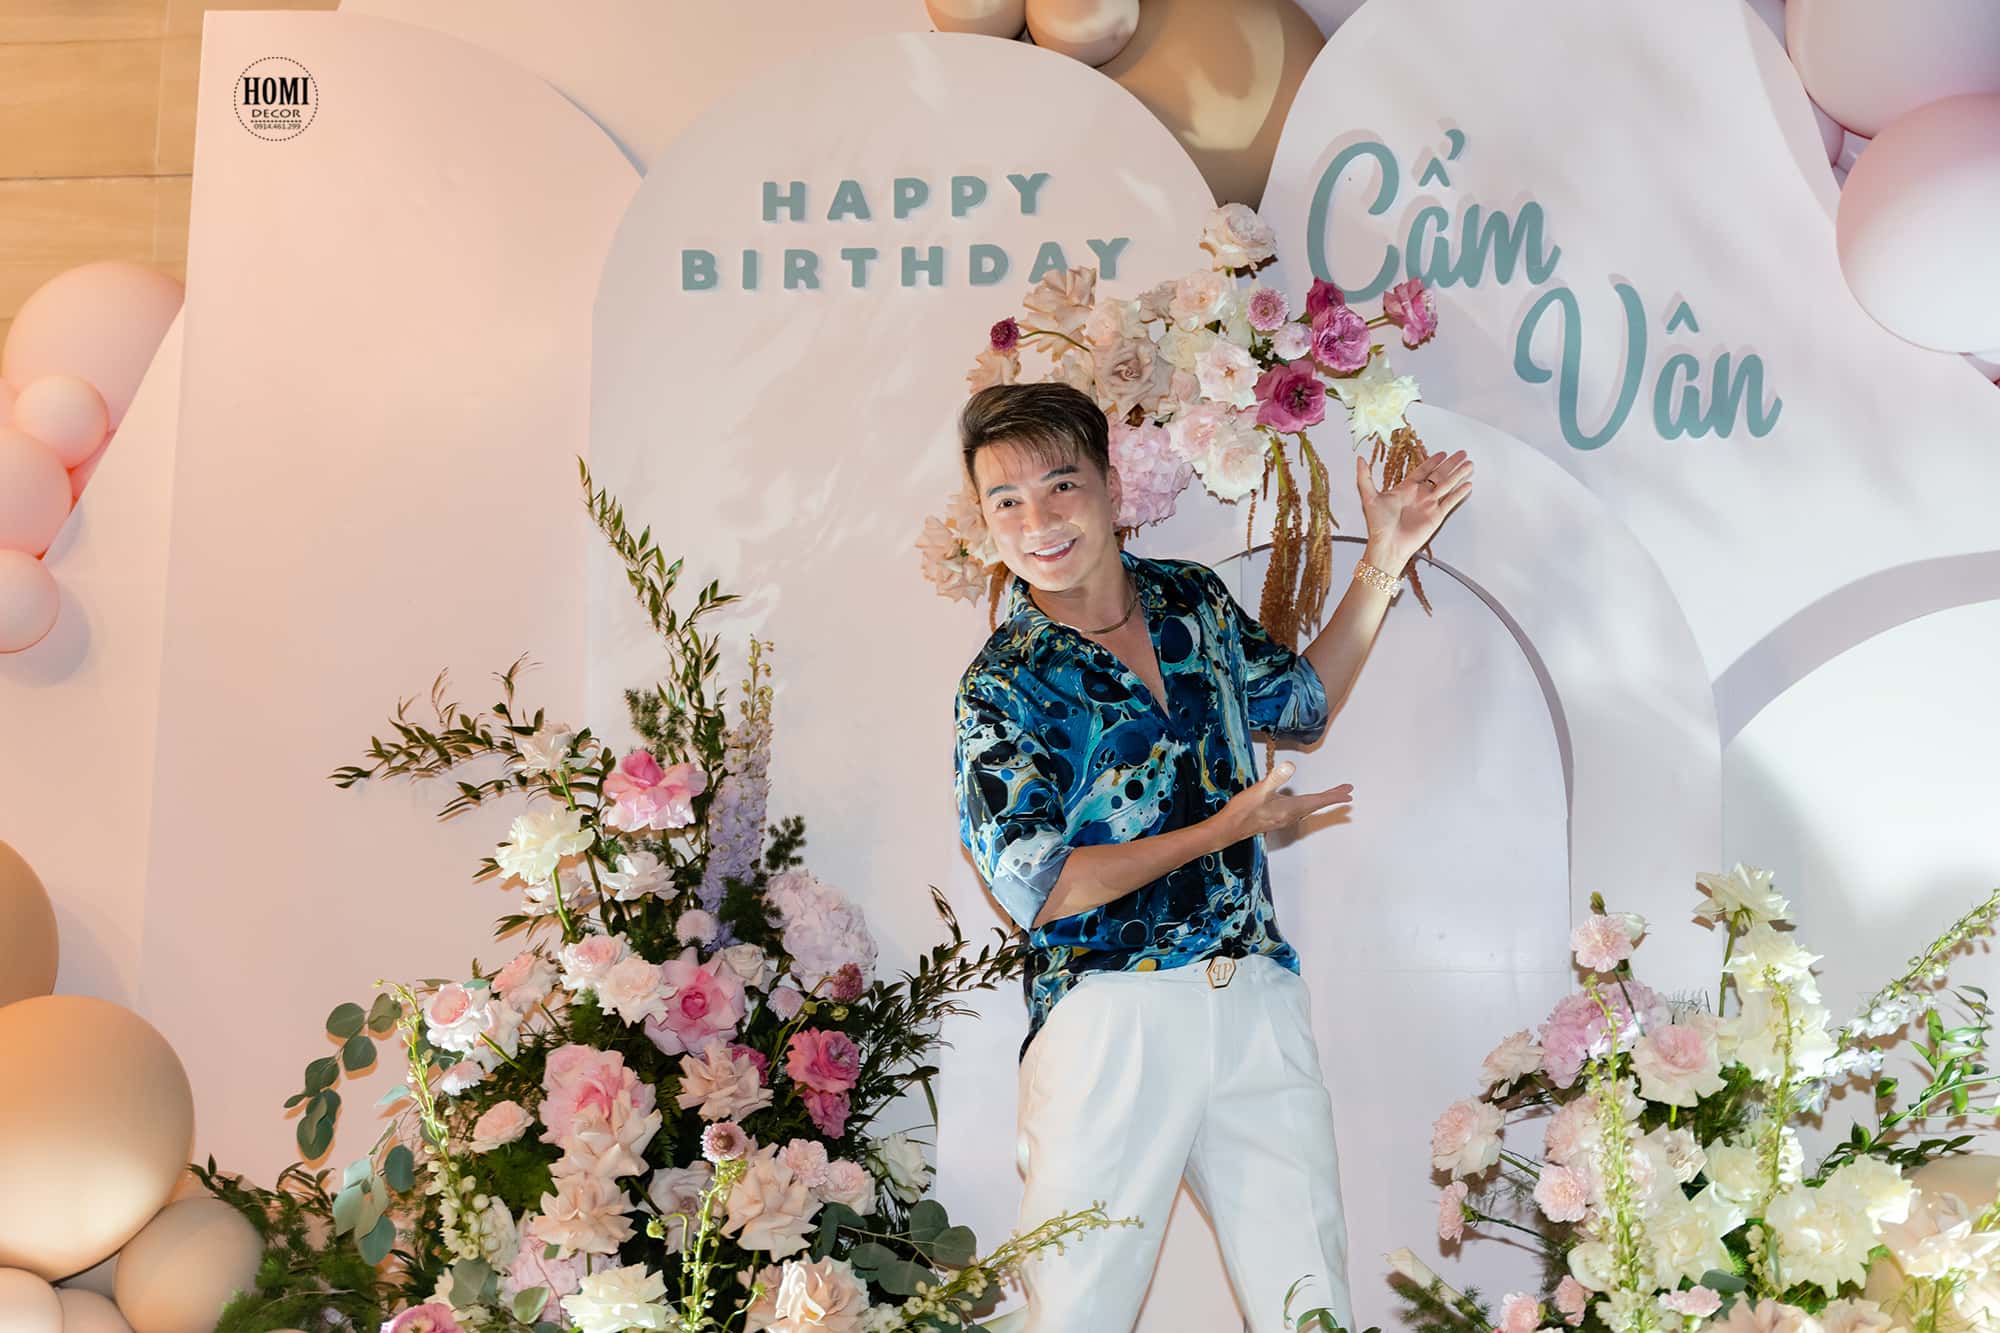 Trang trí sinh nhật ca sĩ Cẩm Vân 